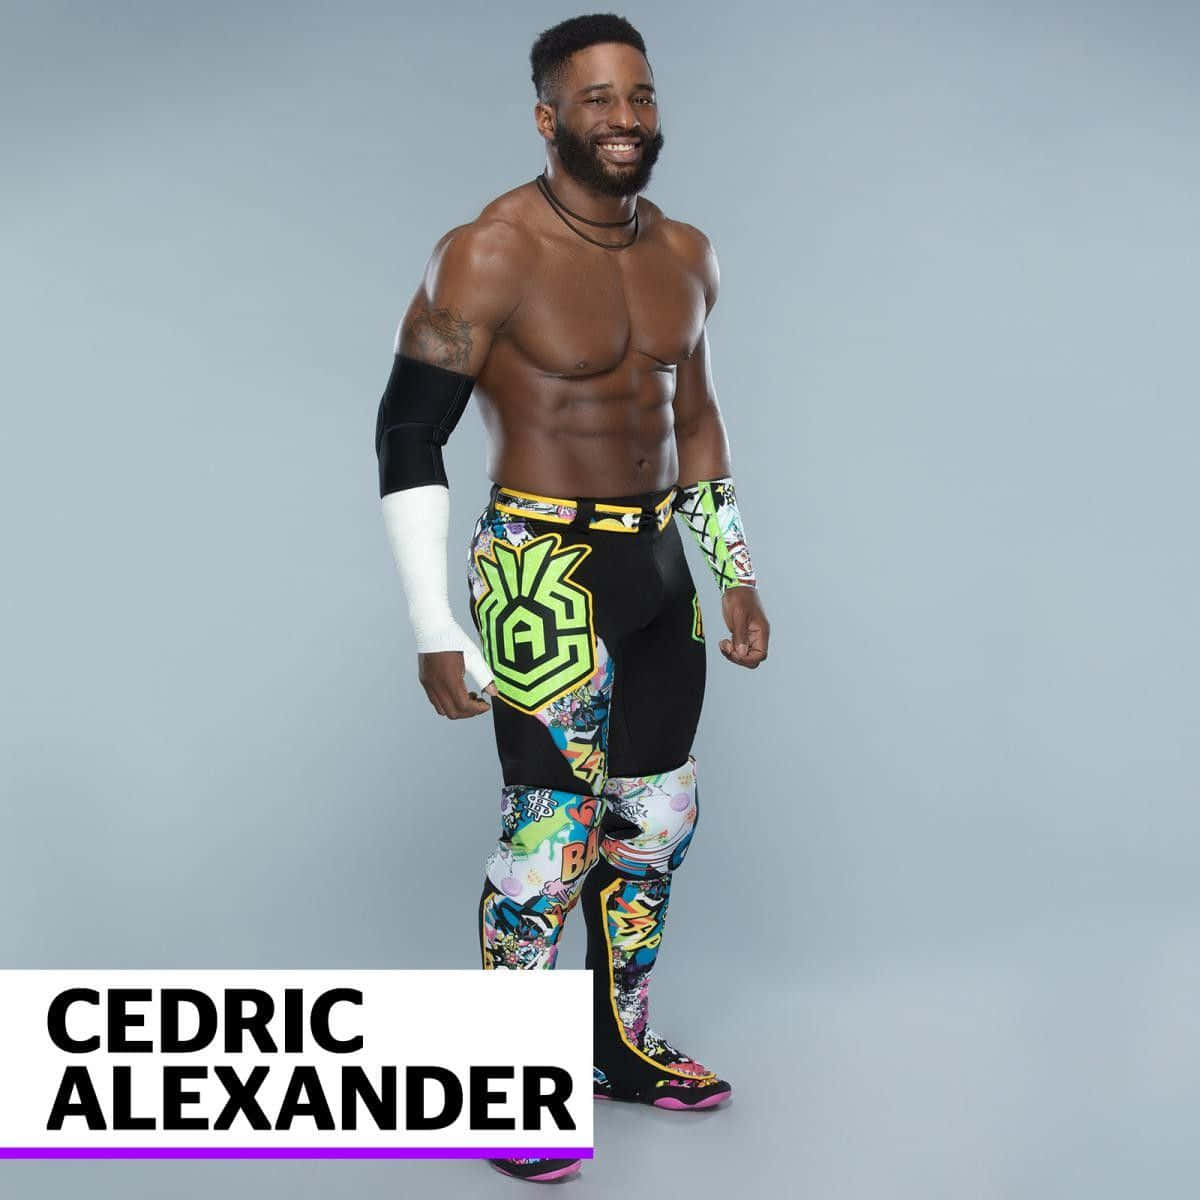 Amerikanischerprofi-wrestler Cedric Alexander Porträt Wallpaper